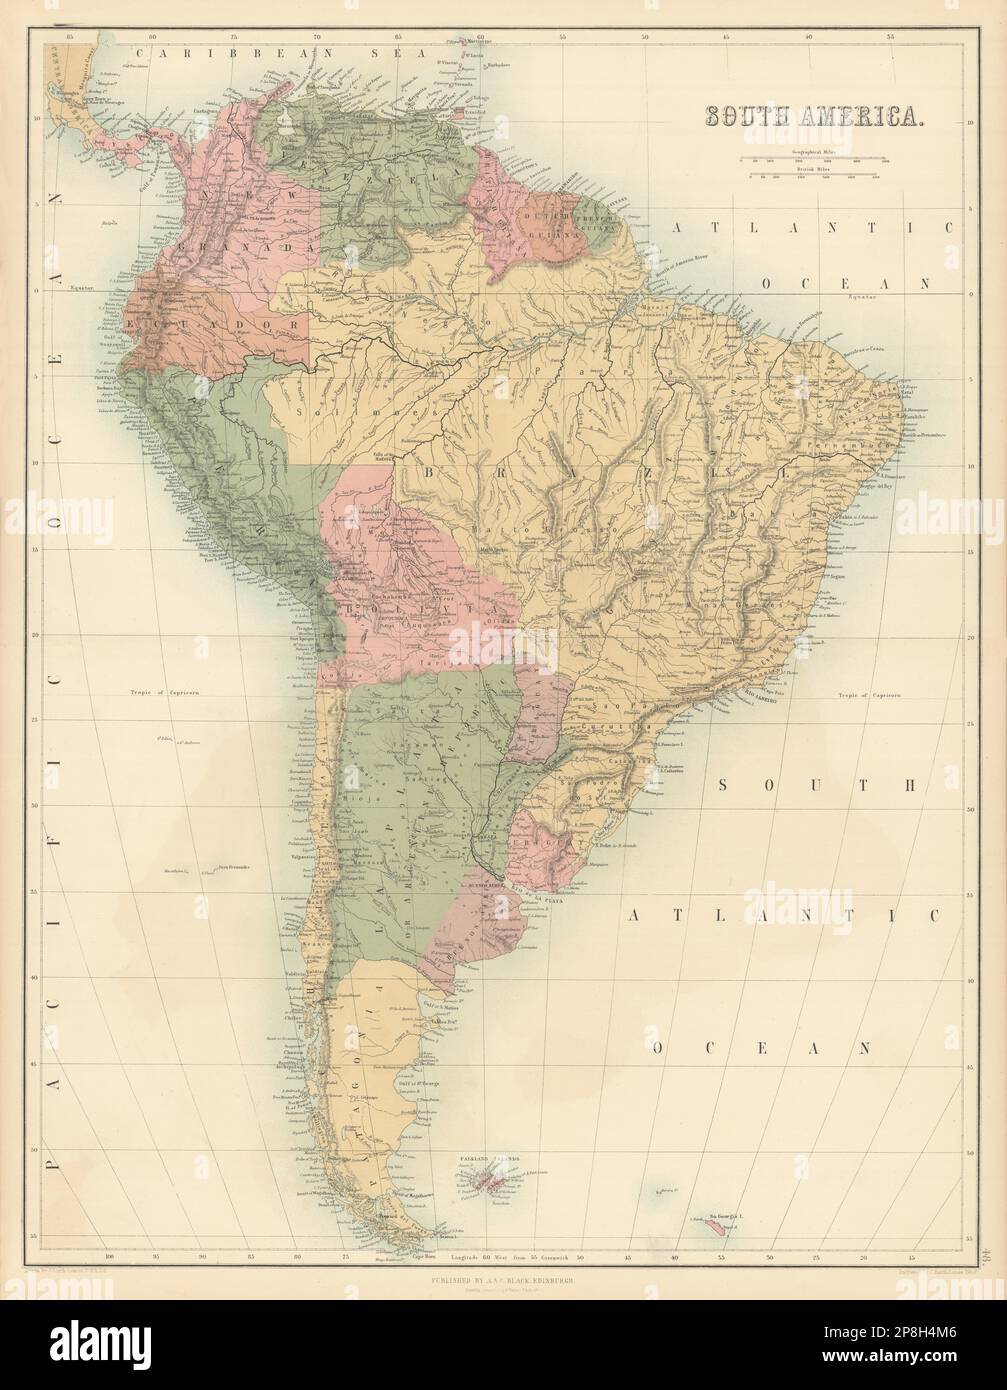 Amérique du Sud. Bolivie avec Litoral avant la guerre du Pacifique. BARTHOLOMEW 1862 carte Banque D'Images